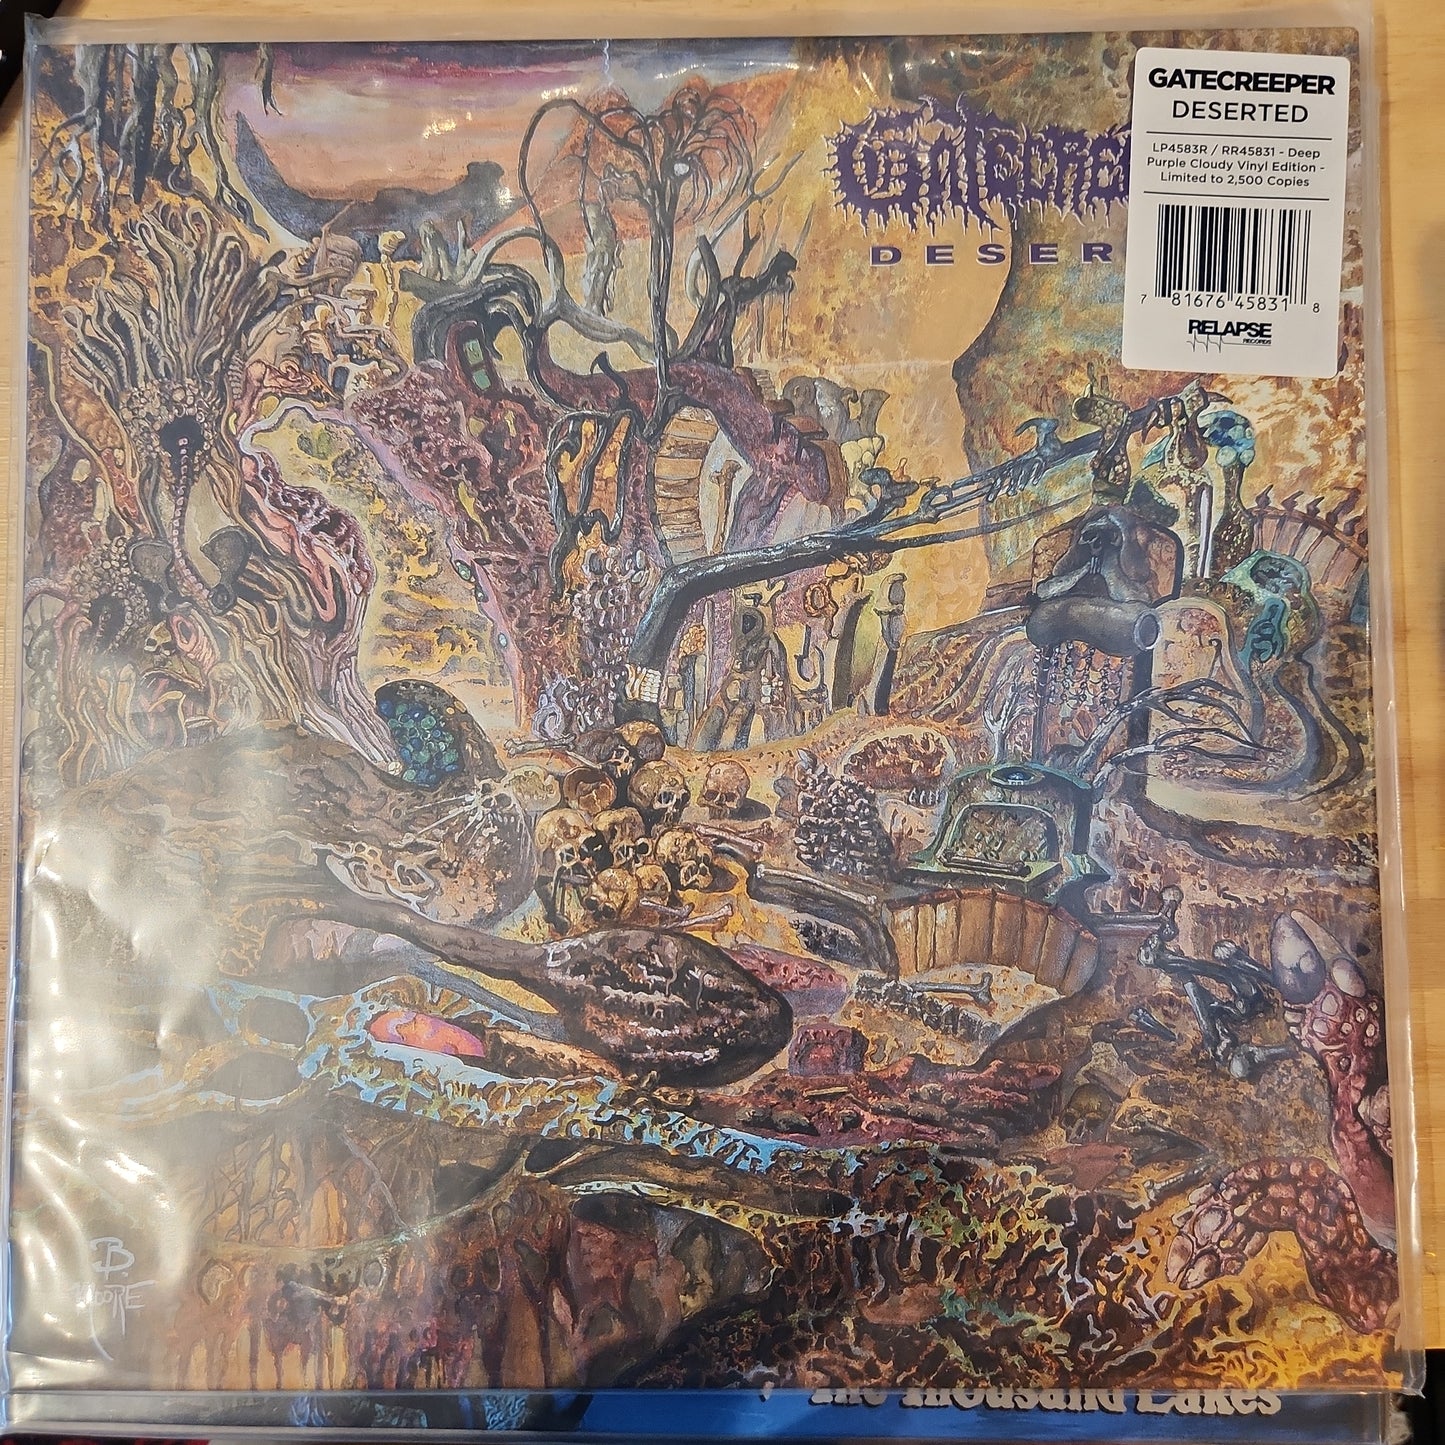 GateCreeper - Deserted - Colour Vinyl LP